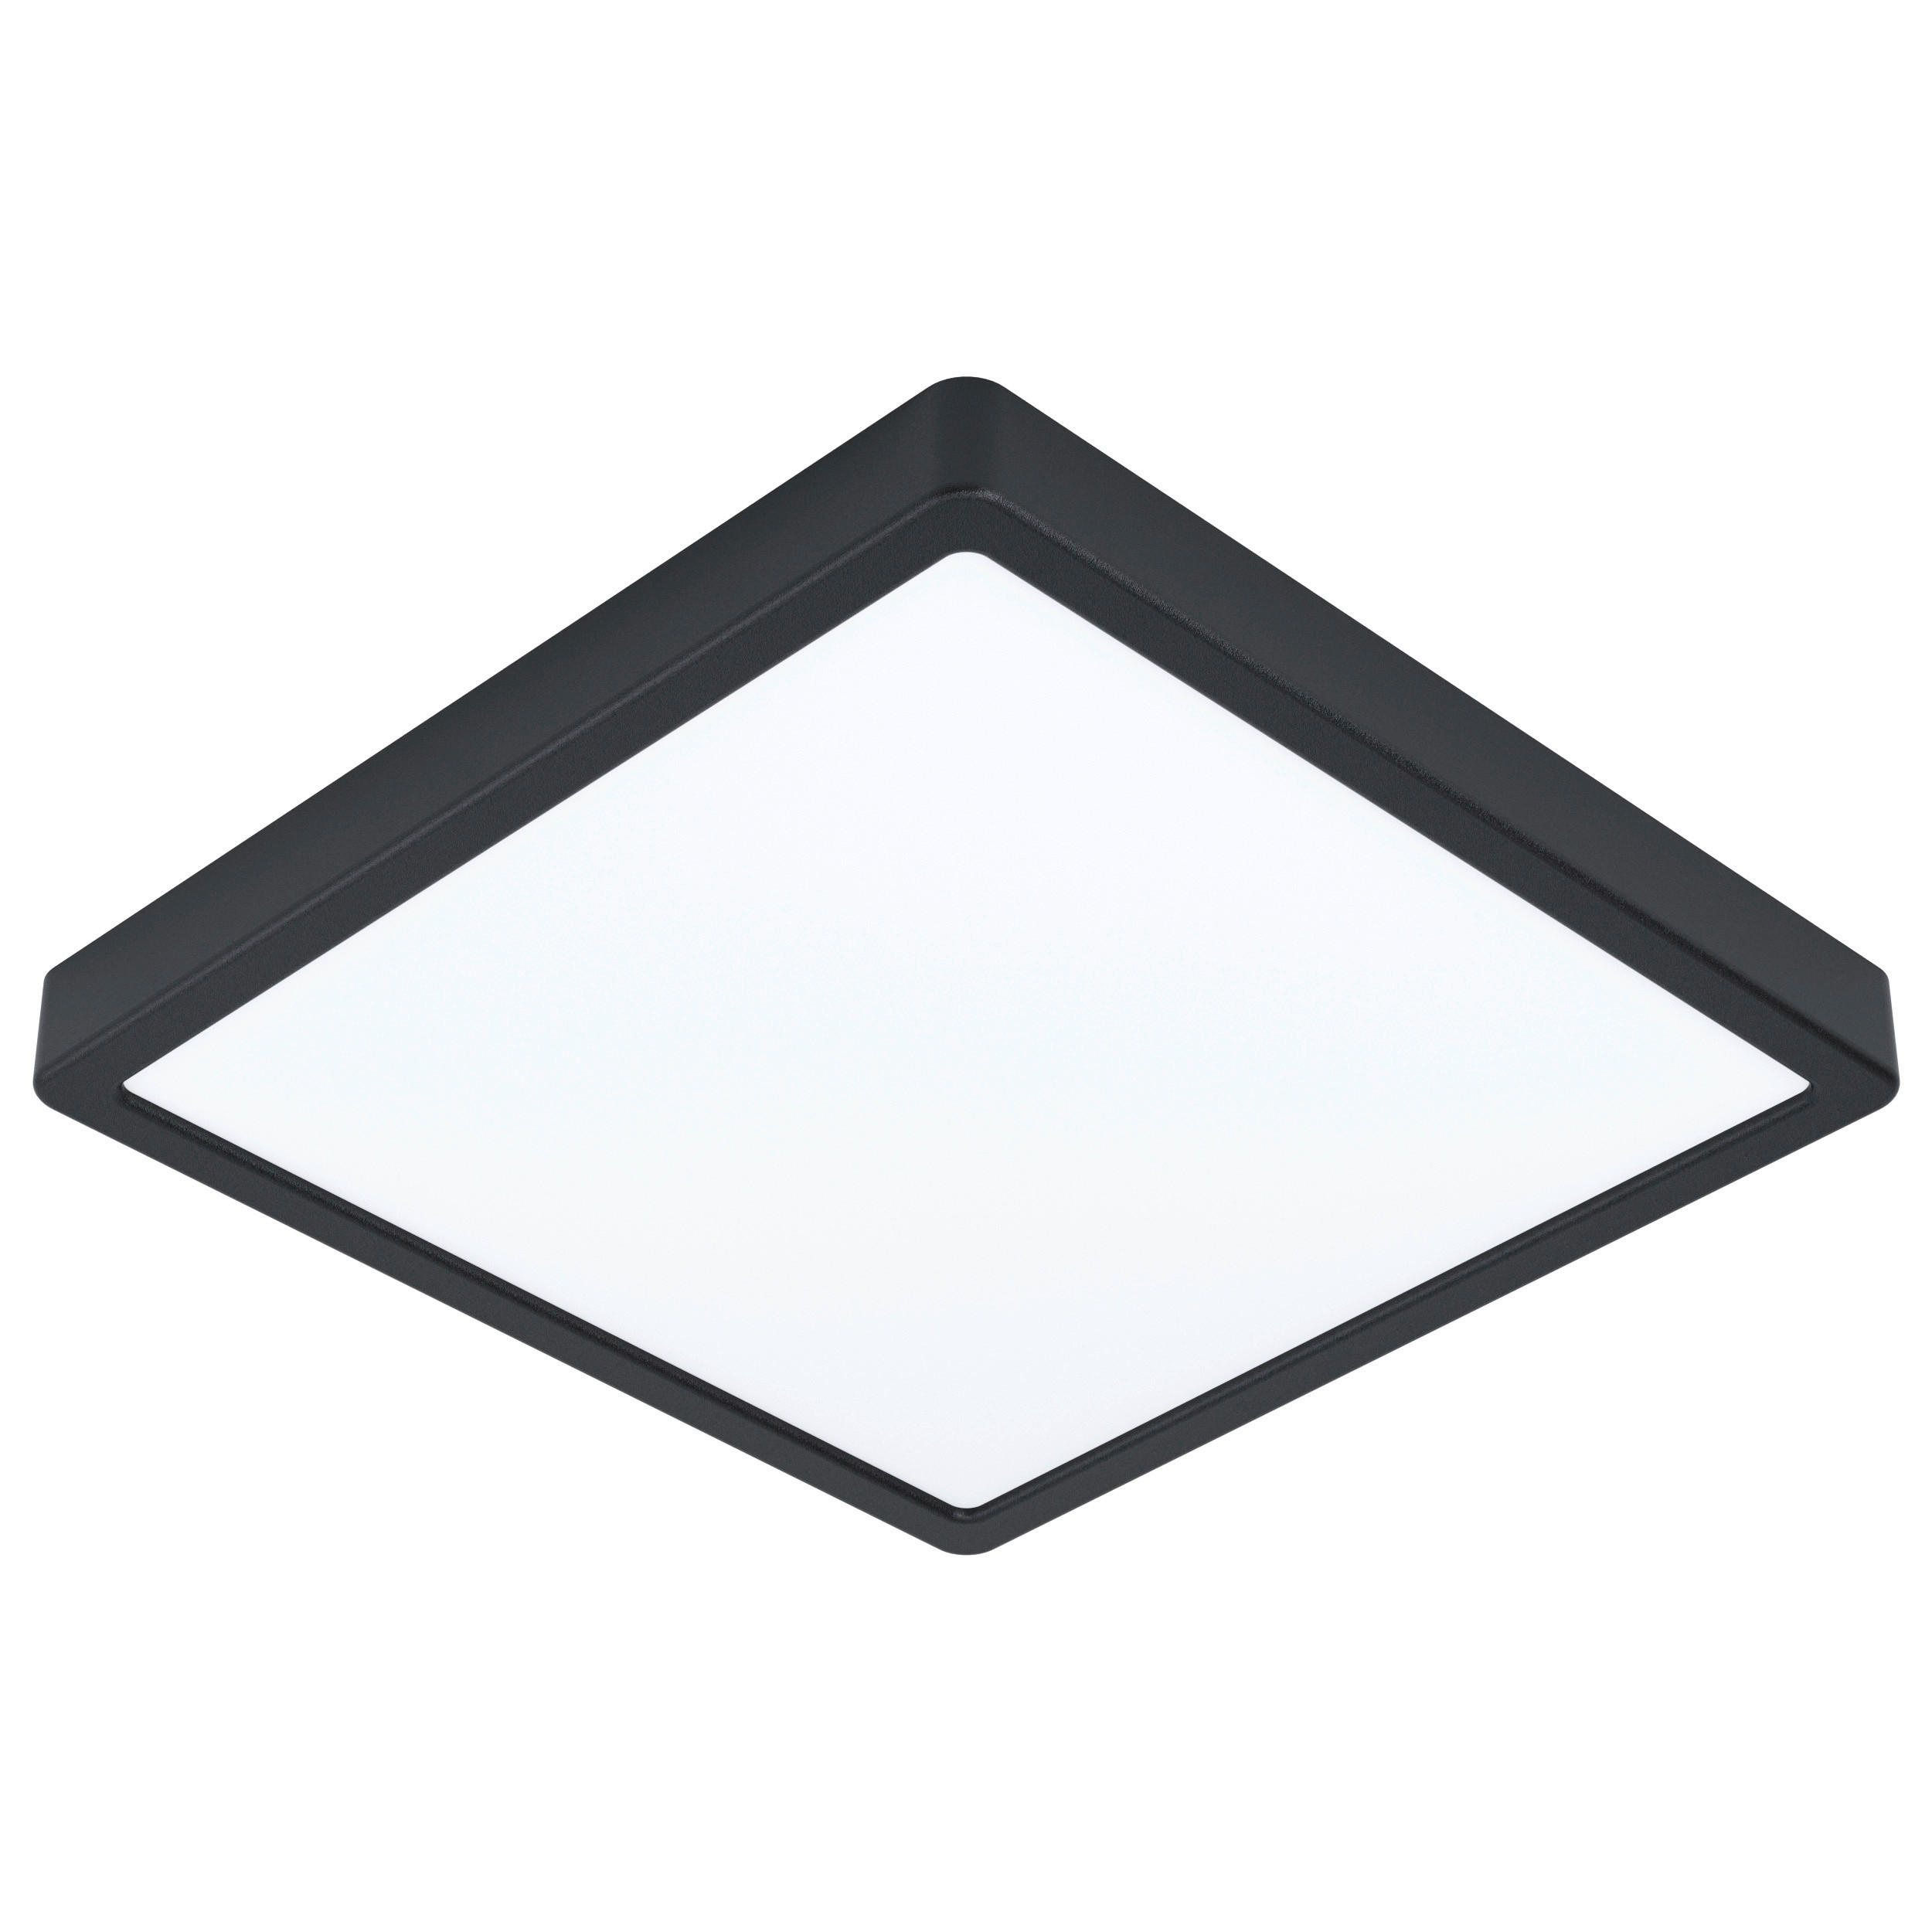 LED-DECKENLEUCHTE 20 W    28,5/28,5/2,8 cm  - Schwarz/Weiß, Basics, Kunststoff/Metall (28,5/28,5/2,8cm) - Novel